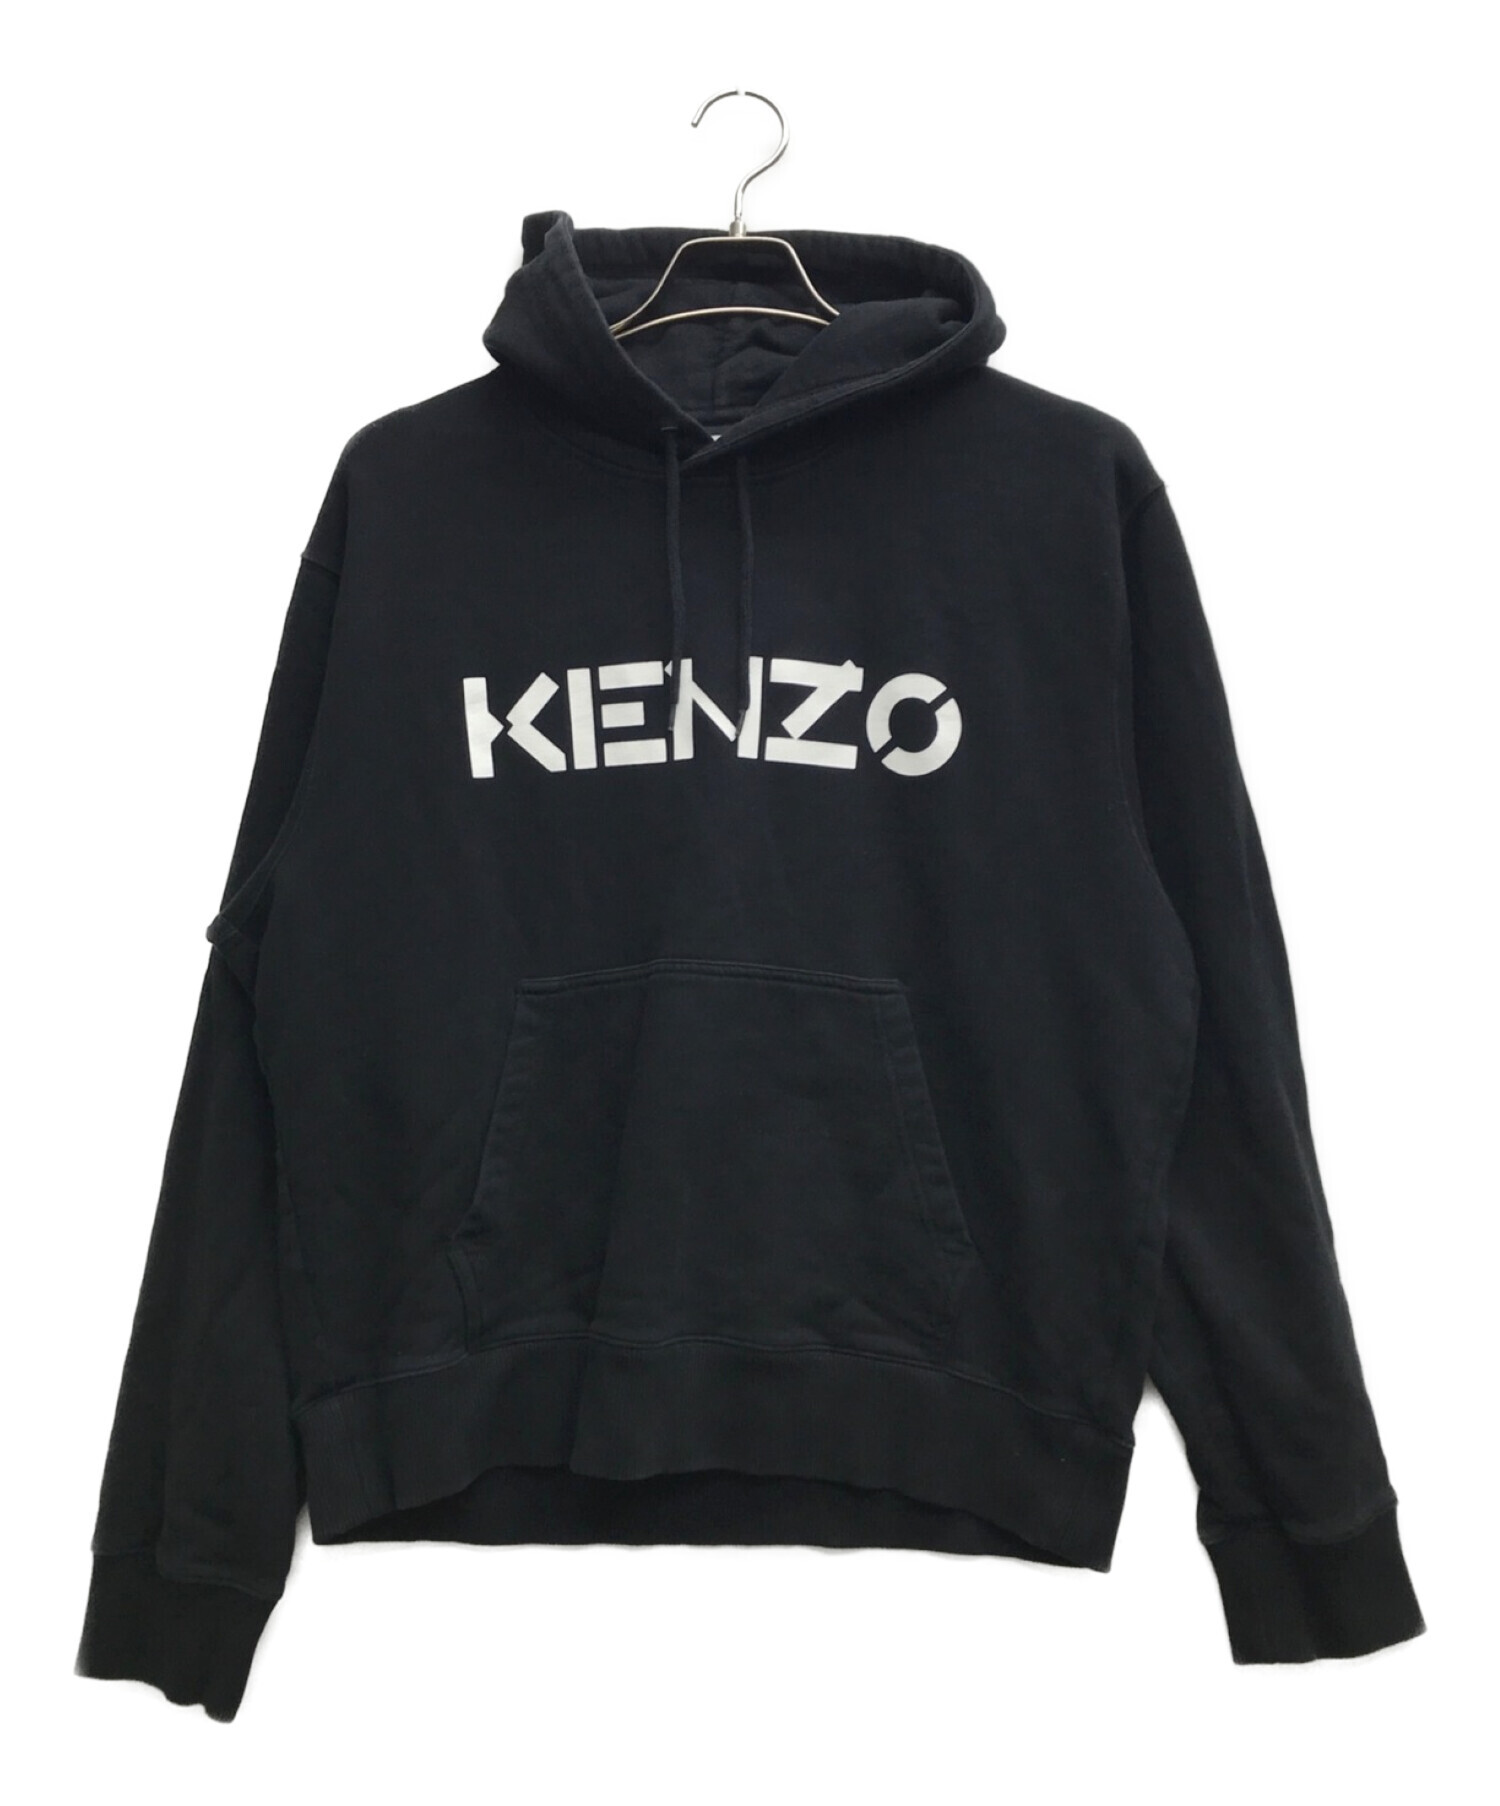 KENZO (ケンゾー) ブランドロゴパーカー ブラック サイズ:L